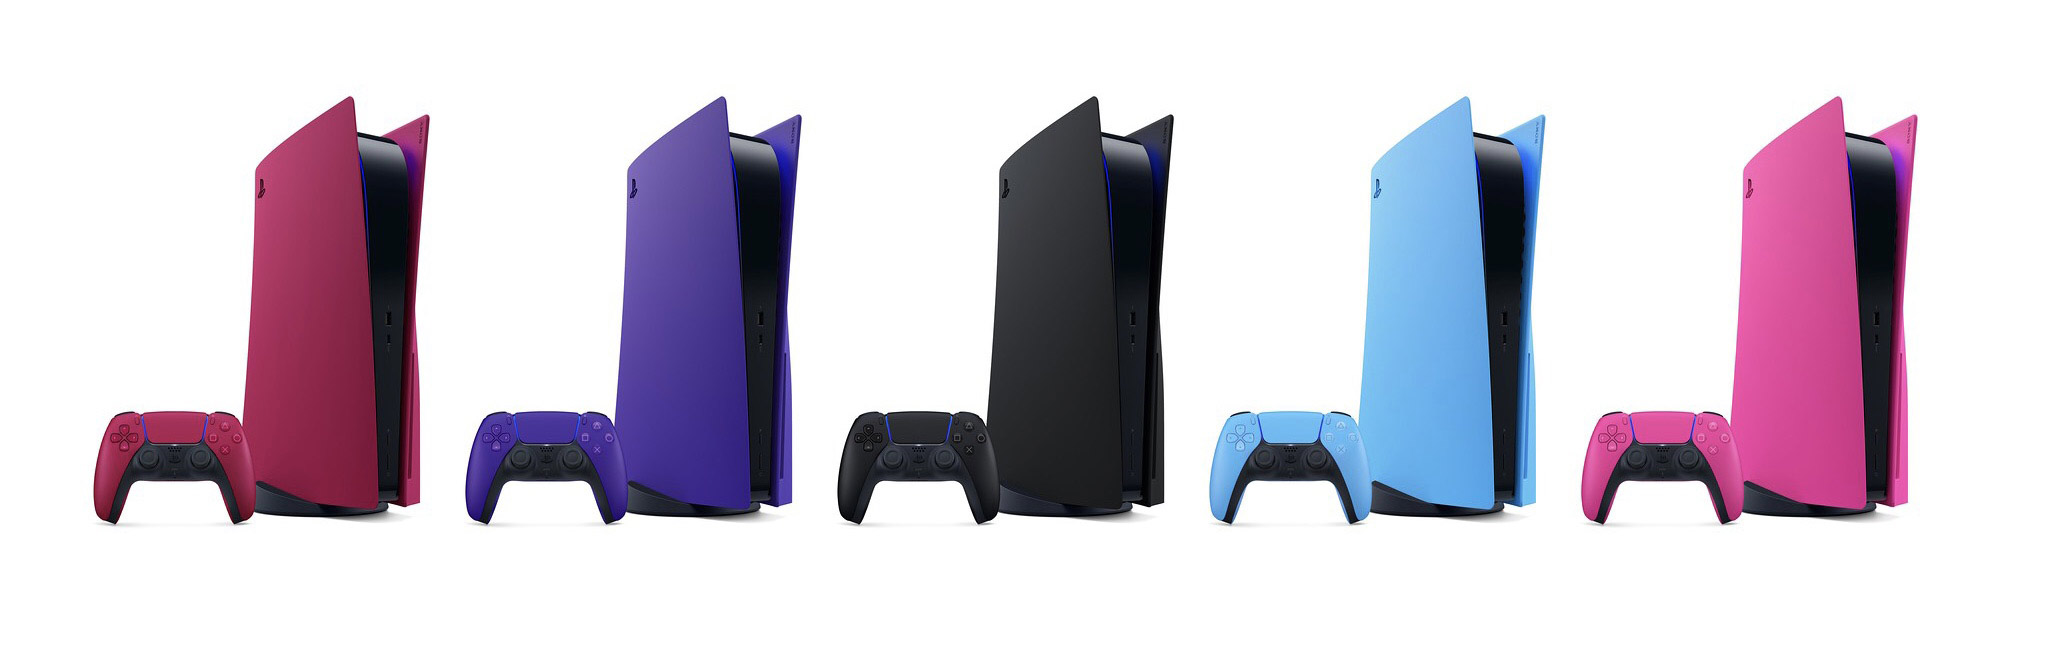 索尼推出多彩PS5主机面板与手柄